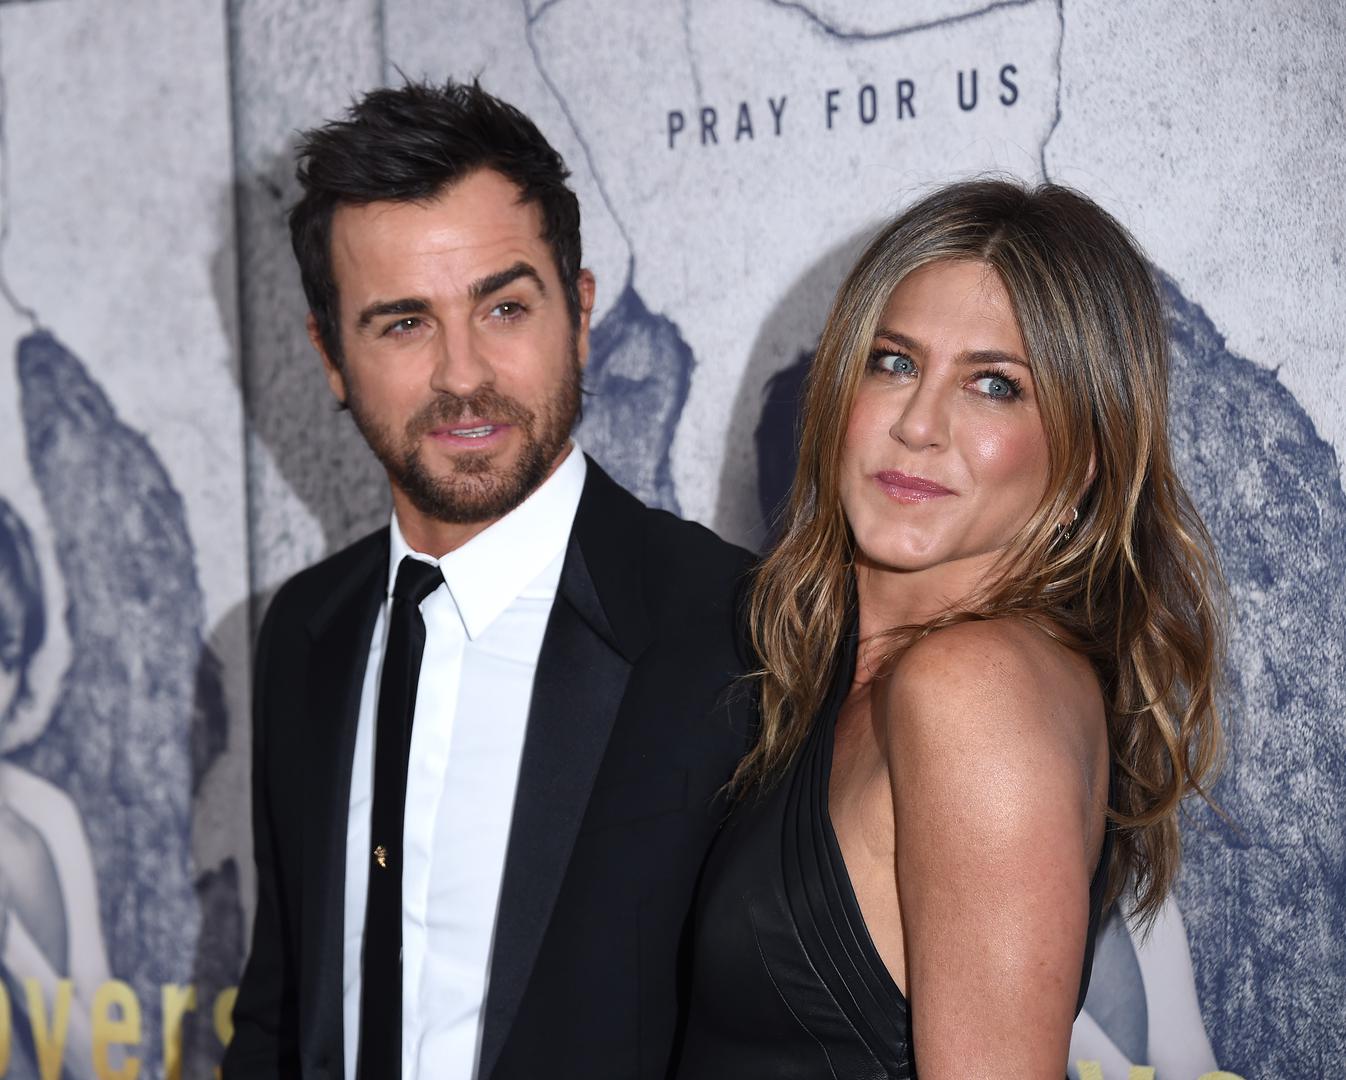 Jennifer Aniston poslije razvoda od Justina Therouxa u javnosti se nije pojavila s novim dečkom, a u medijima je izbjegavala govoriti o tome je li  zaljubljena